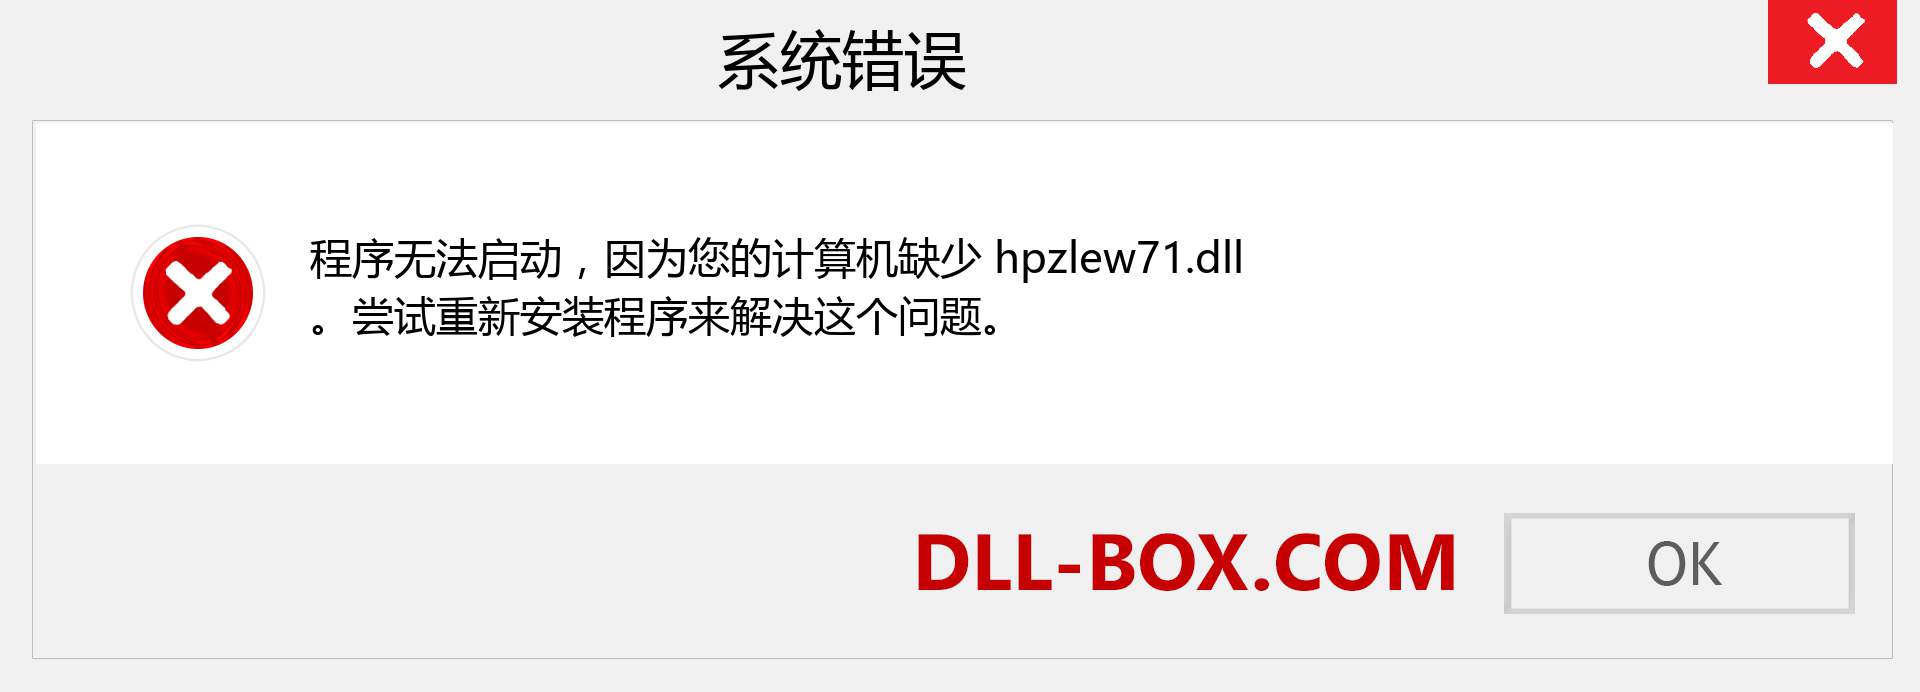 hpzlew71.dll 文件丢失？。 适用于 Windows 7、8、10 的下载 - 修复 Windows、照片、图像上的 hpzlew71 dll 丢失错误